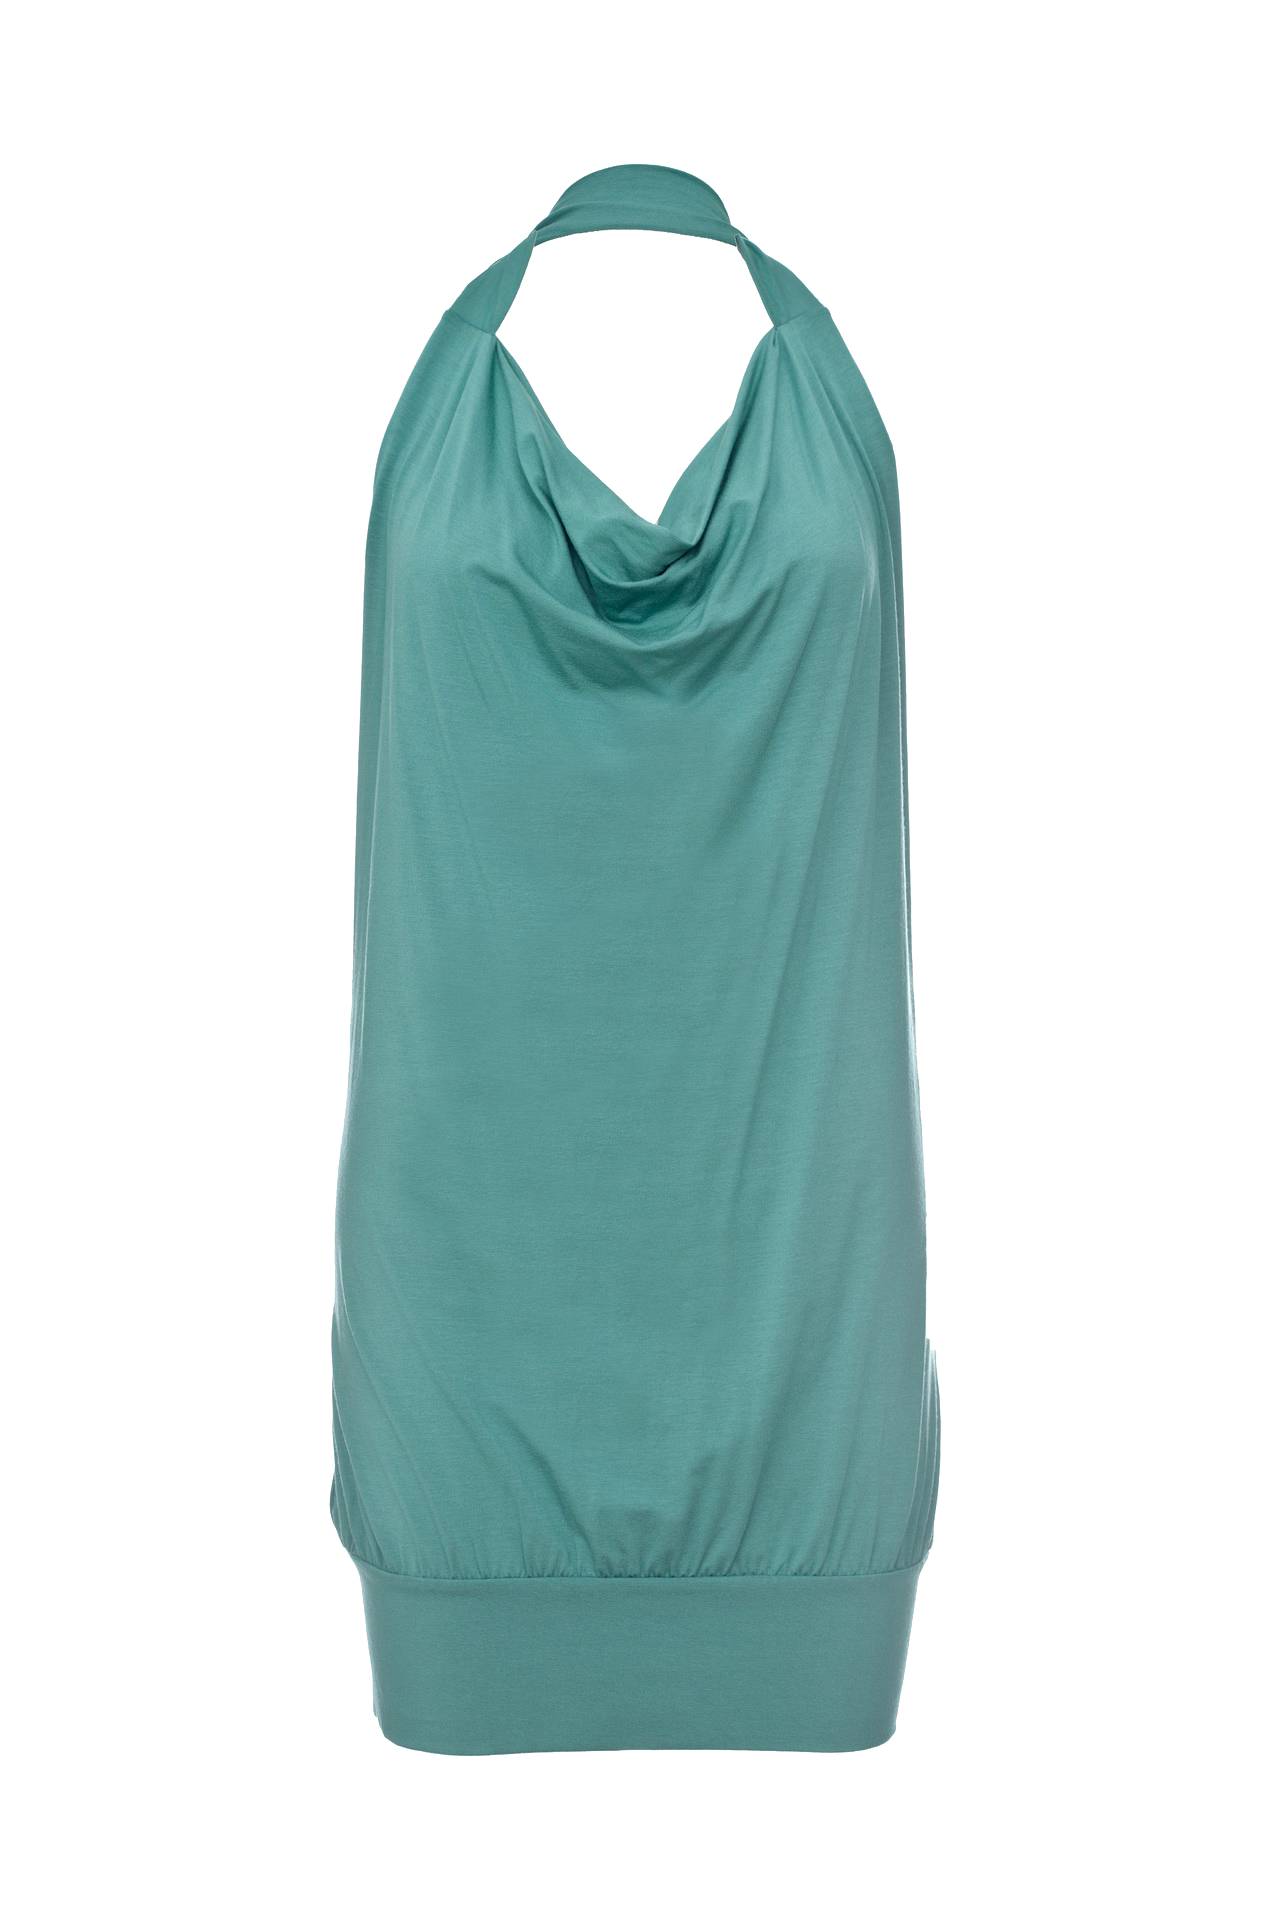 Одежда женская Топ NORTHLAND (UE0539/11.1). Купить за 2450 руб.